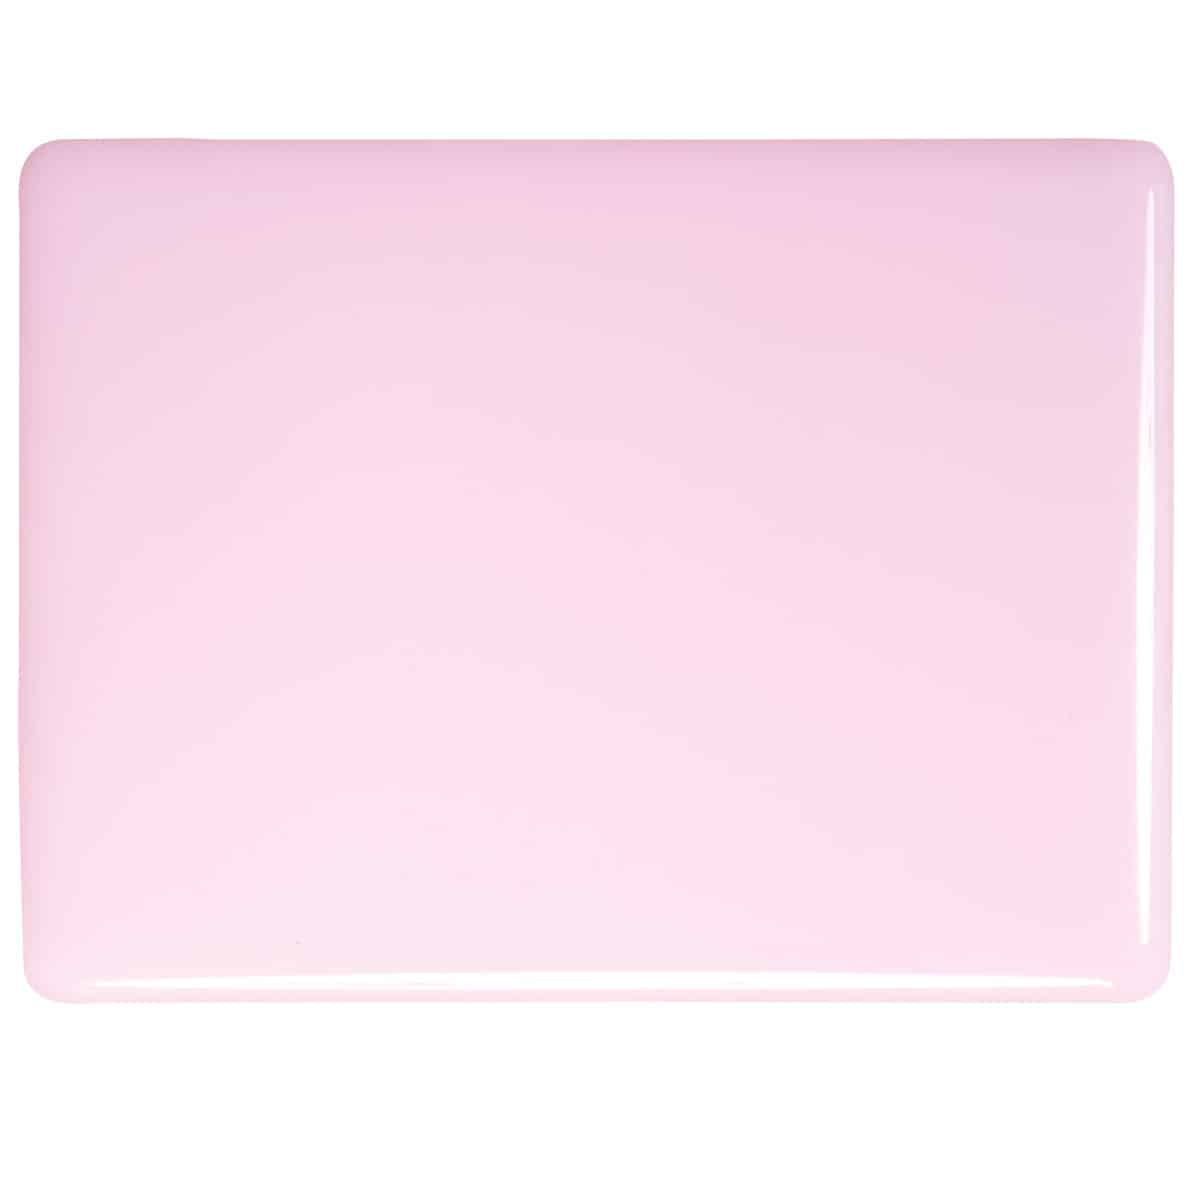 000421 Petal Pink Opal sheet glass swatch